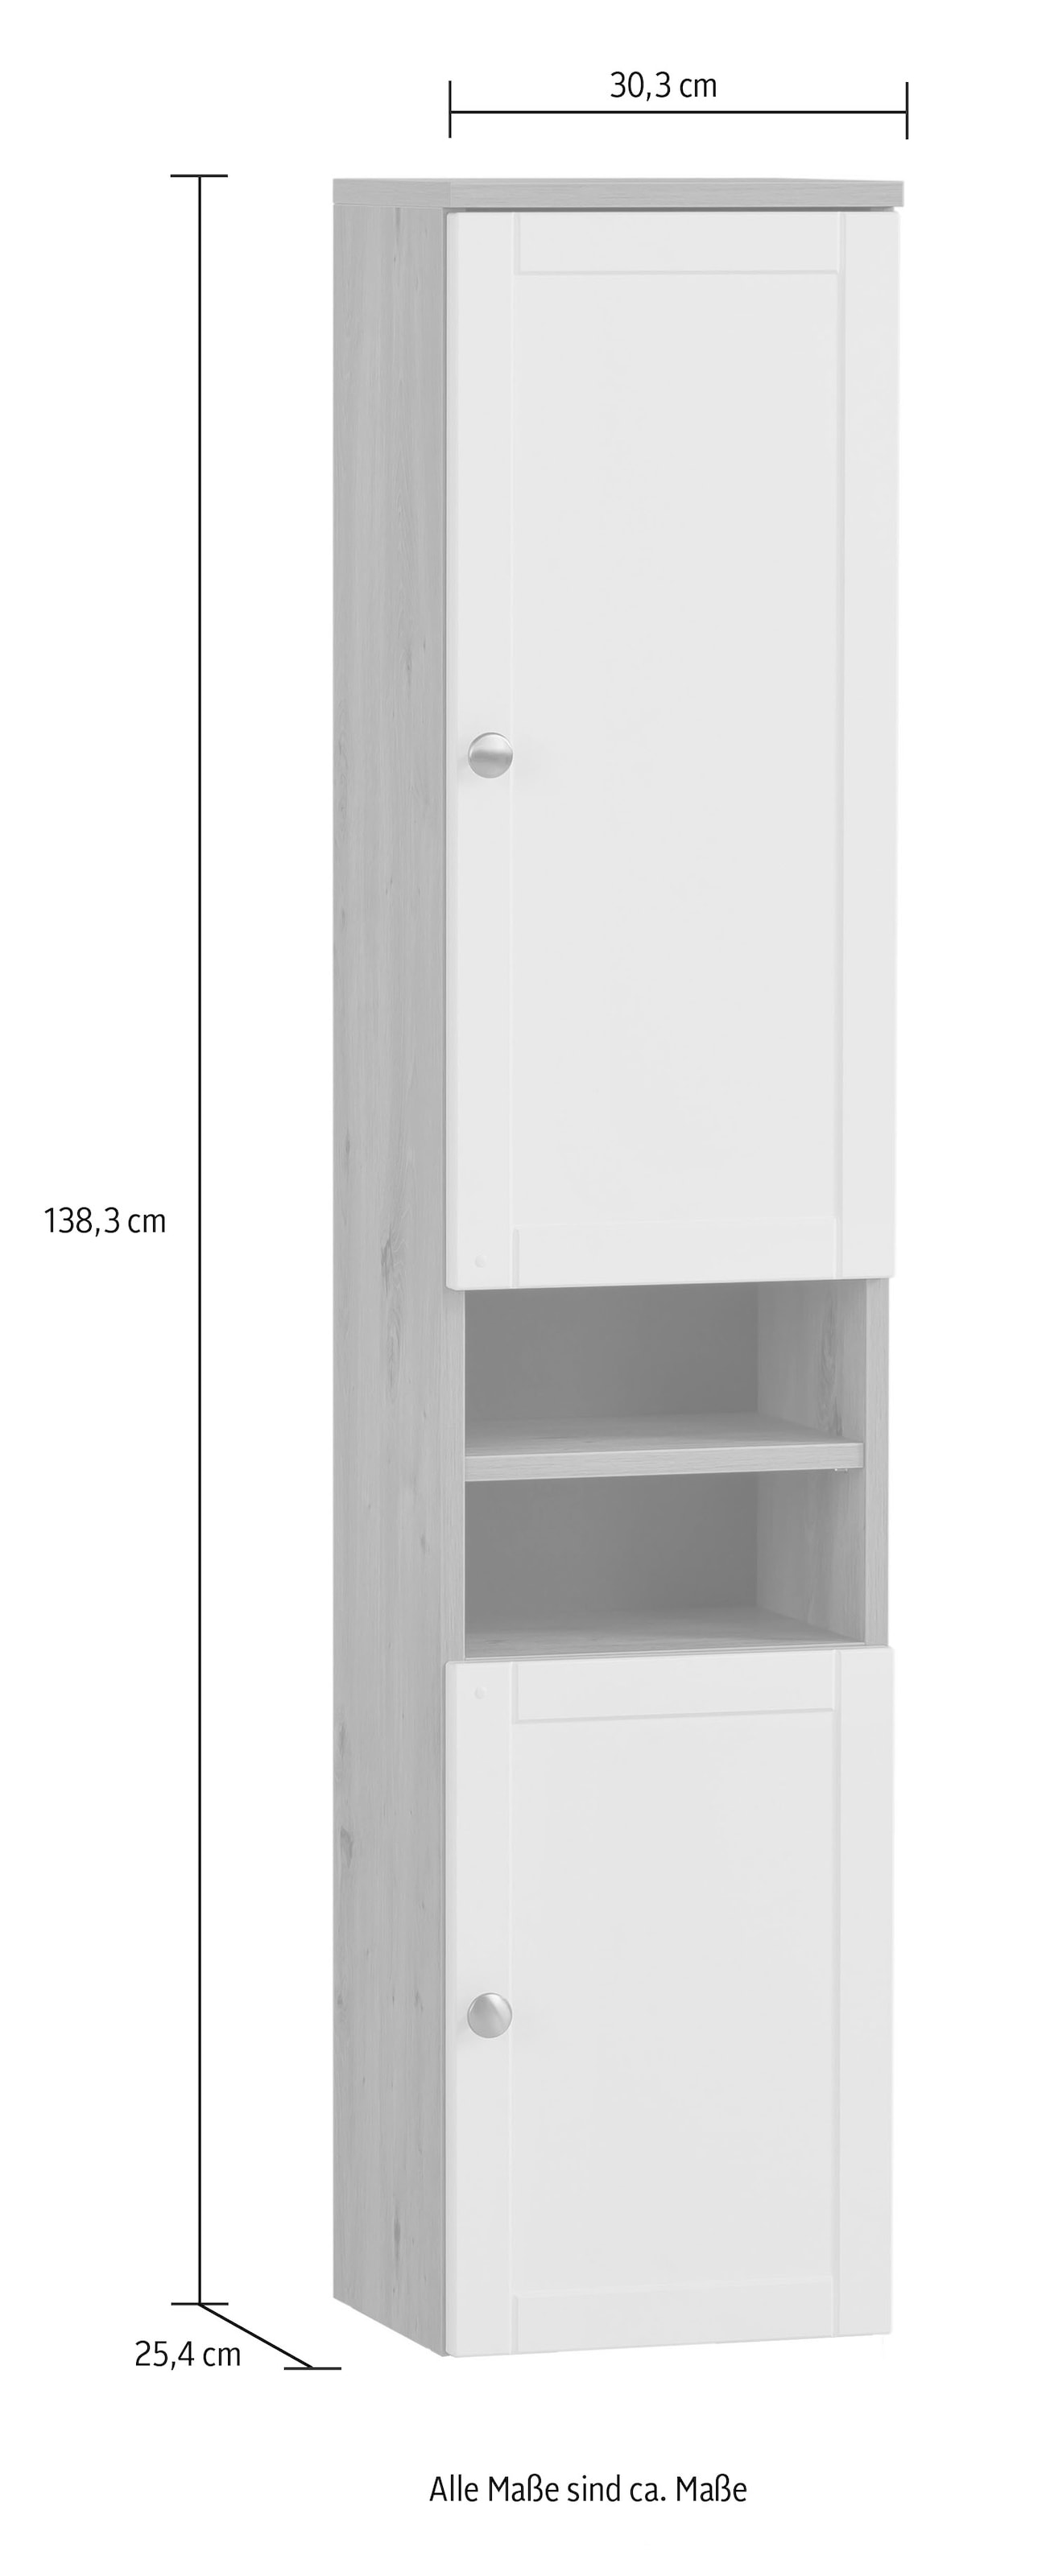 Schildmeyer Hochschrank »Jesper Breite 30,3 cm«, Türen in Landhausoptik, Griff und Beschläge aus Metall